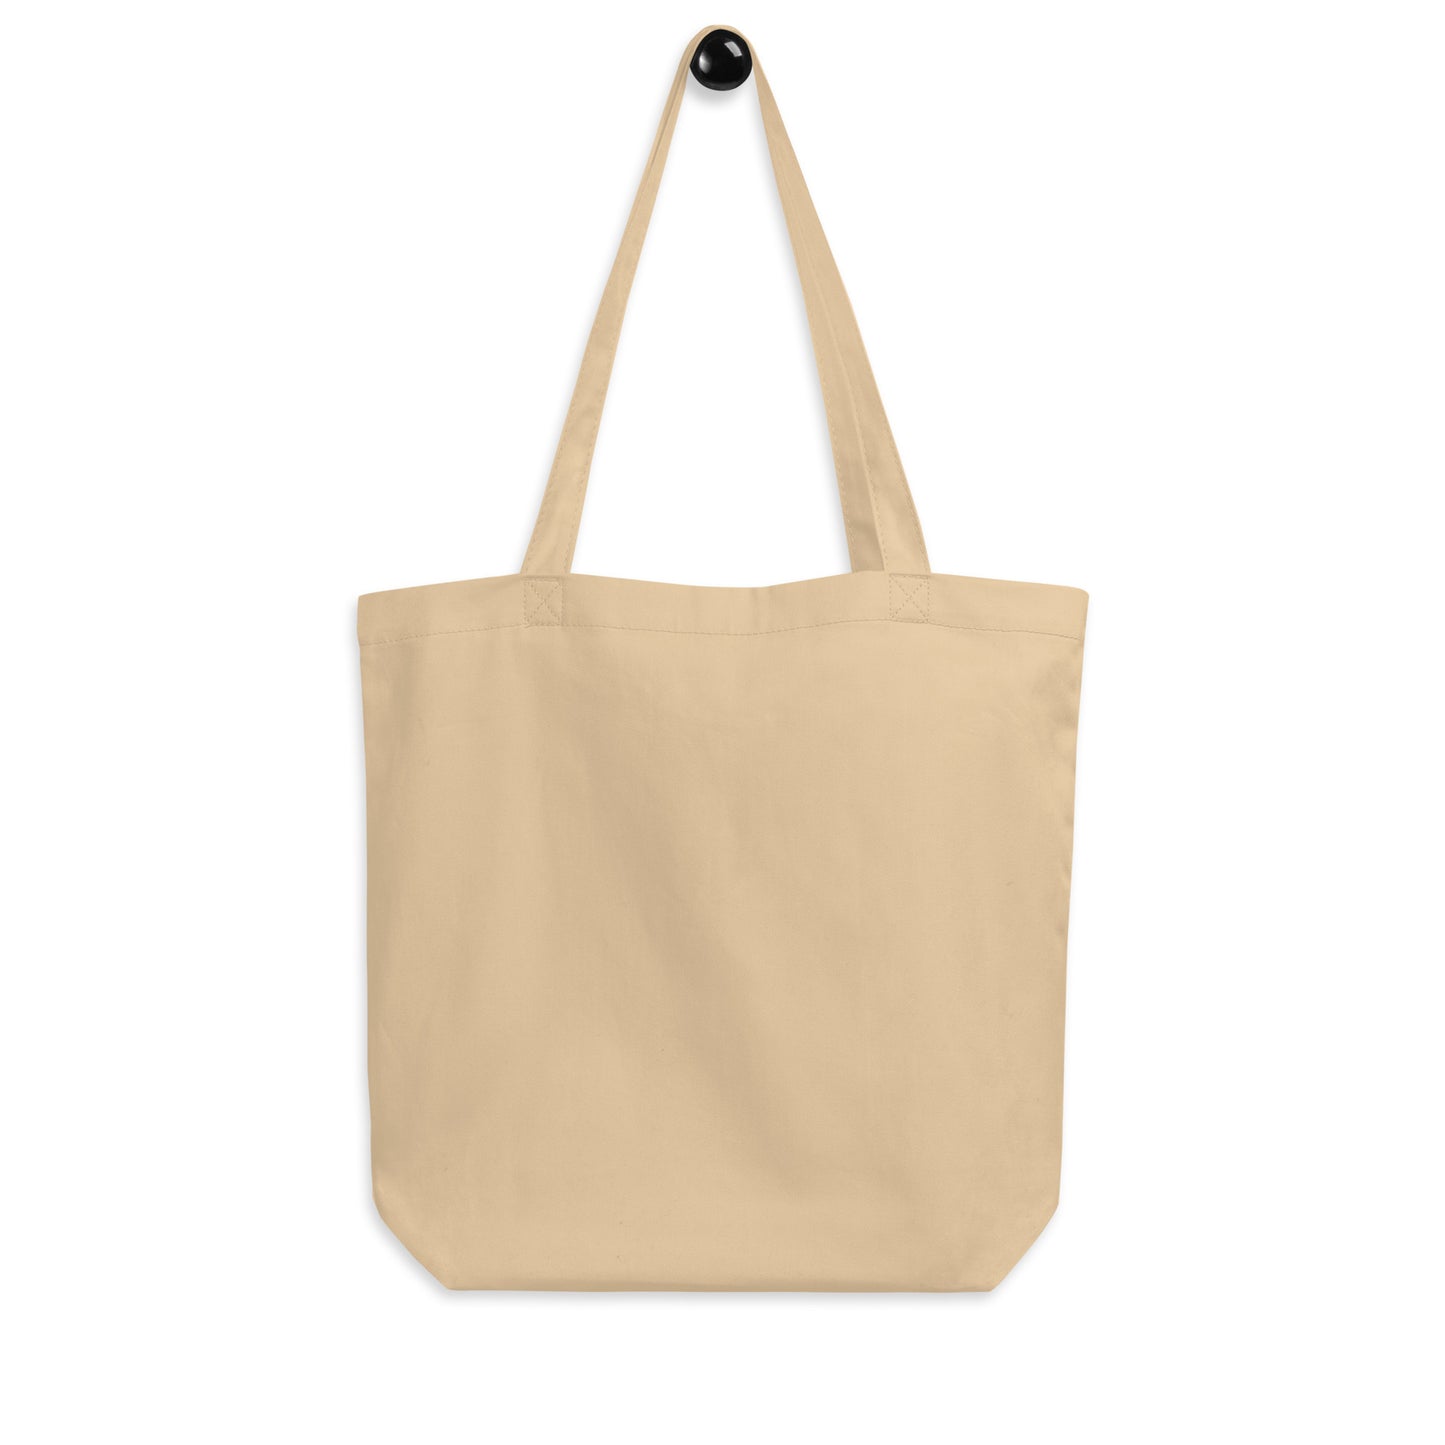 Cool Travel Gift Organic Tote Bag - Viking Blue • DCA Washington • YHM Designs - Image 05